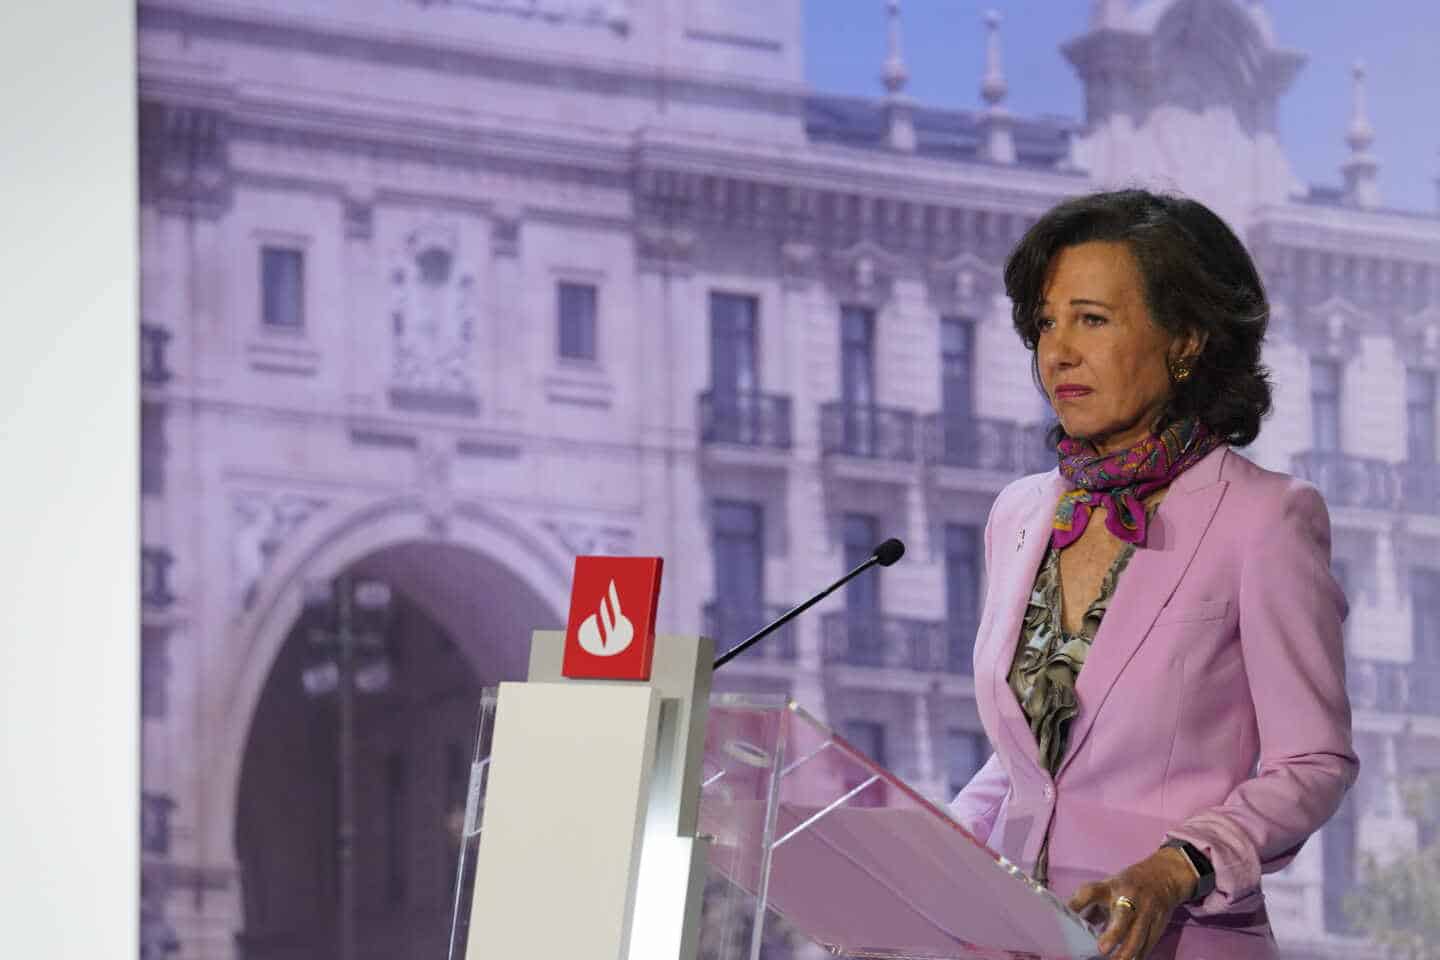 Santander propone prejubilaciones desde los 55 años con el 70% del sueldo